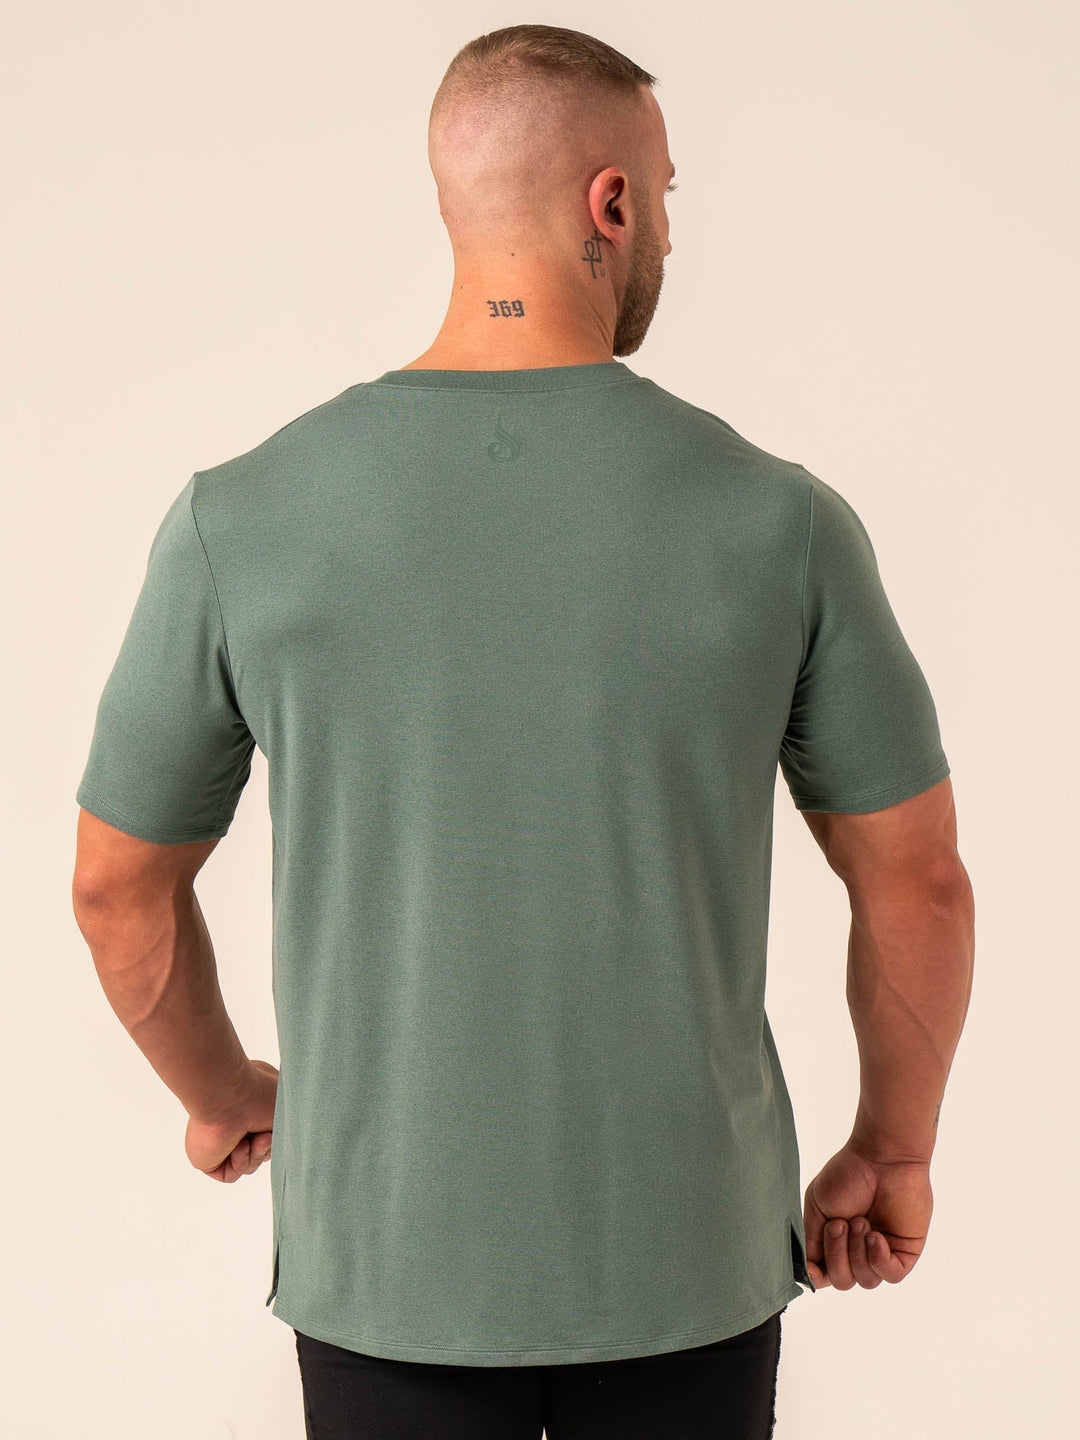 Soft Tech T-Shirt - Fern Green Marl - Ryderwear